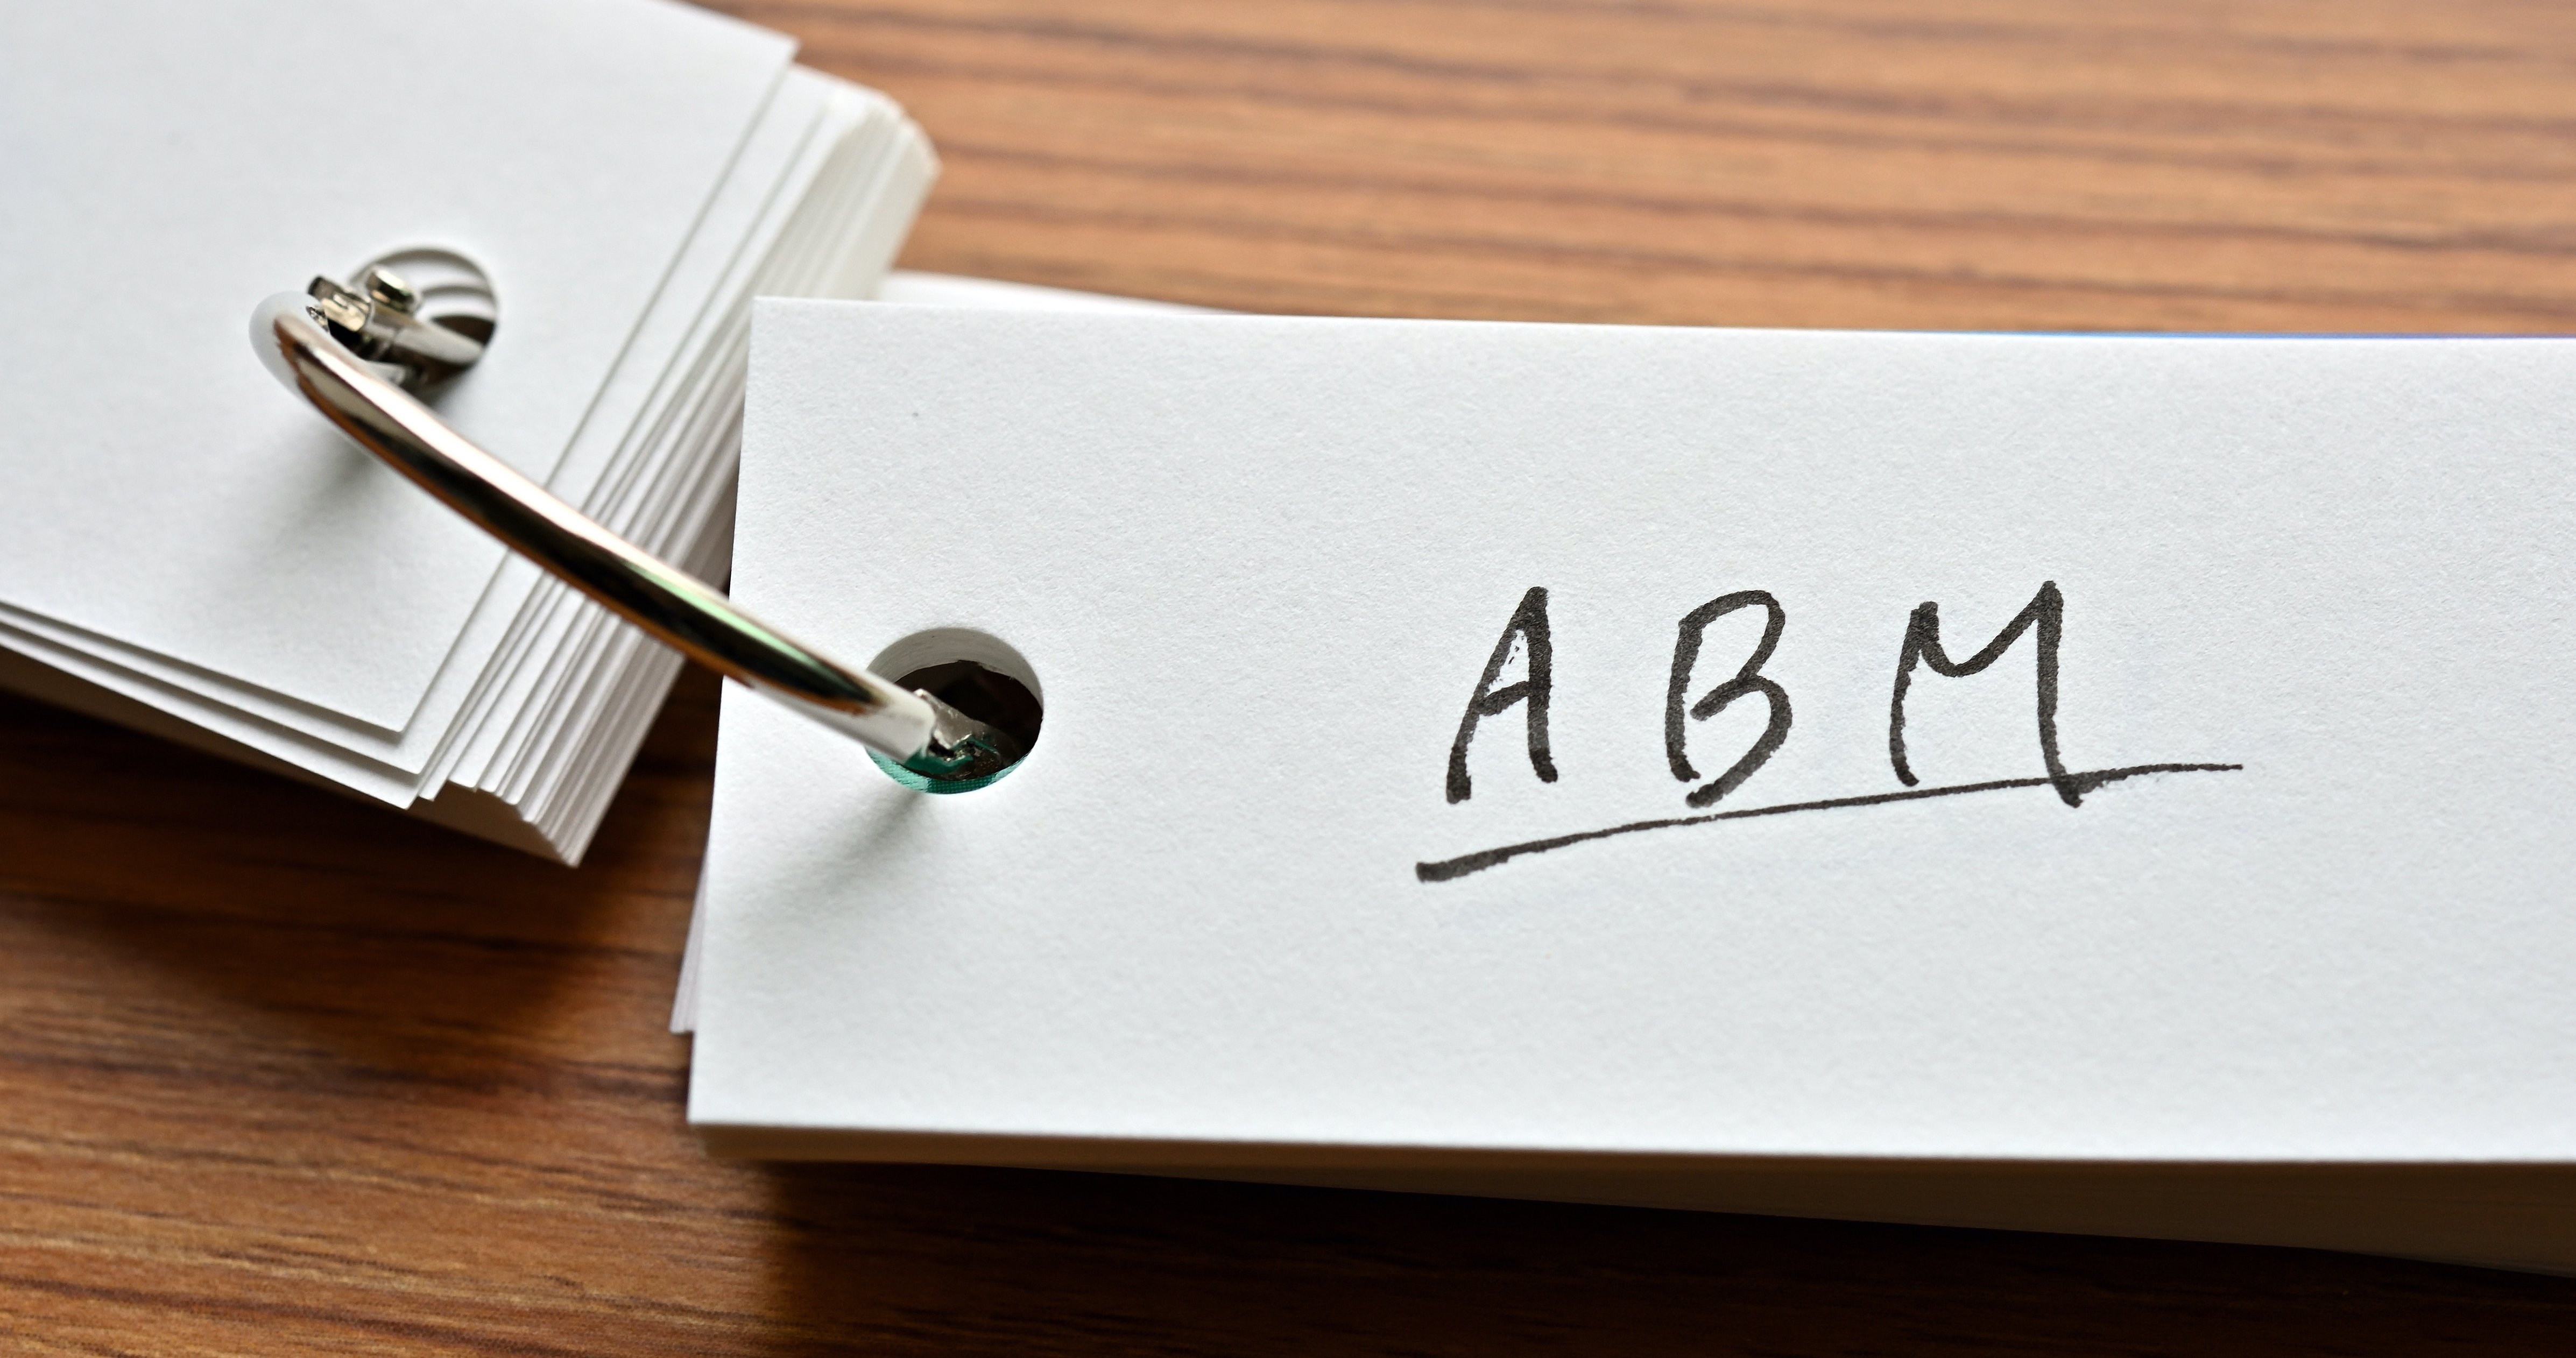 ABM on a notecard